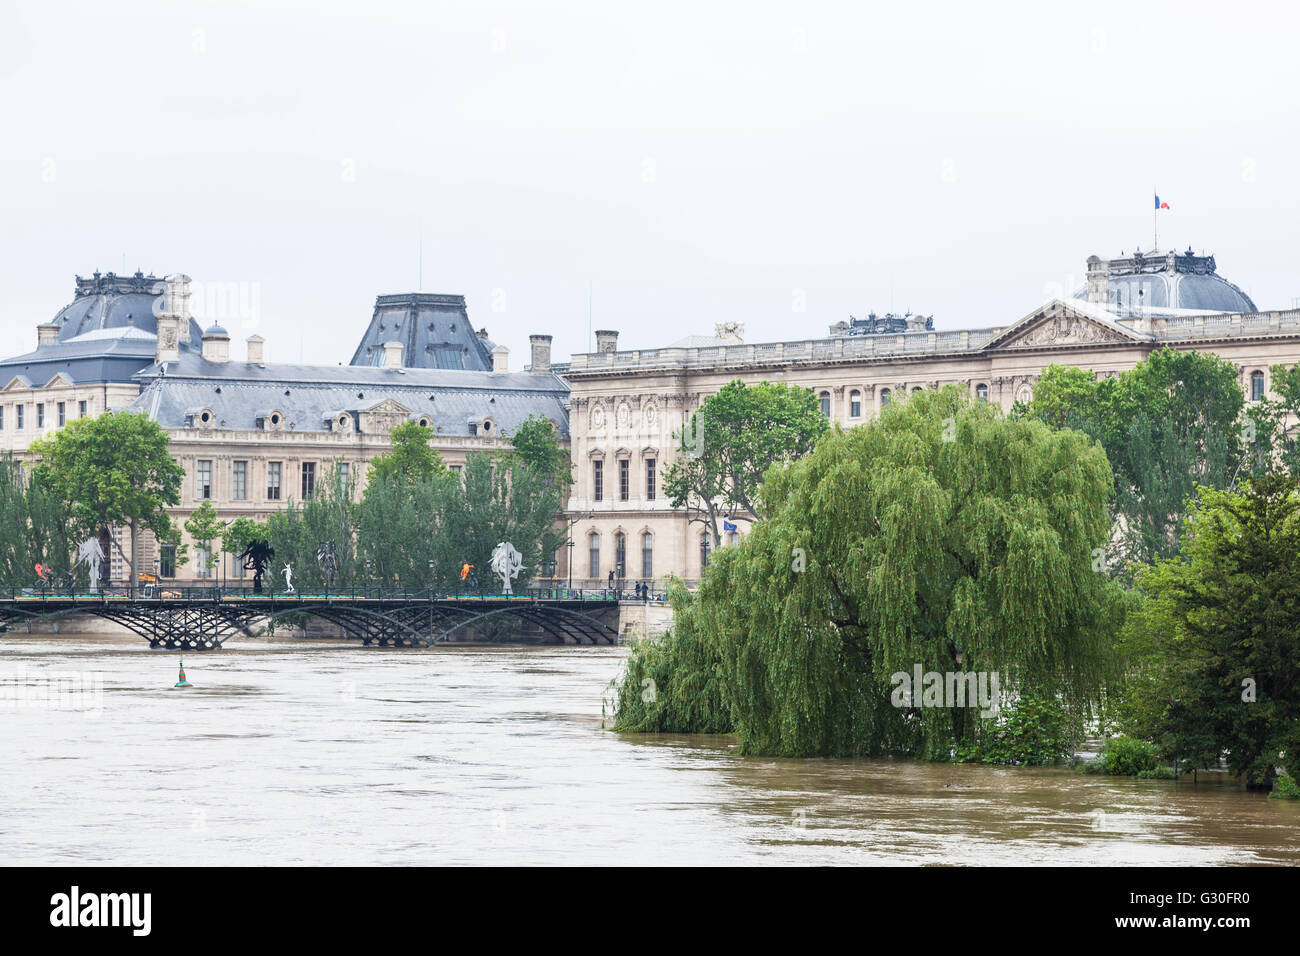 Flood, Louvre, pont des Arts, square du vert galant, Paris, 2016 Stock Photo